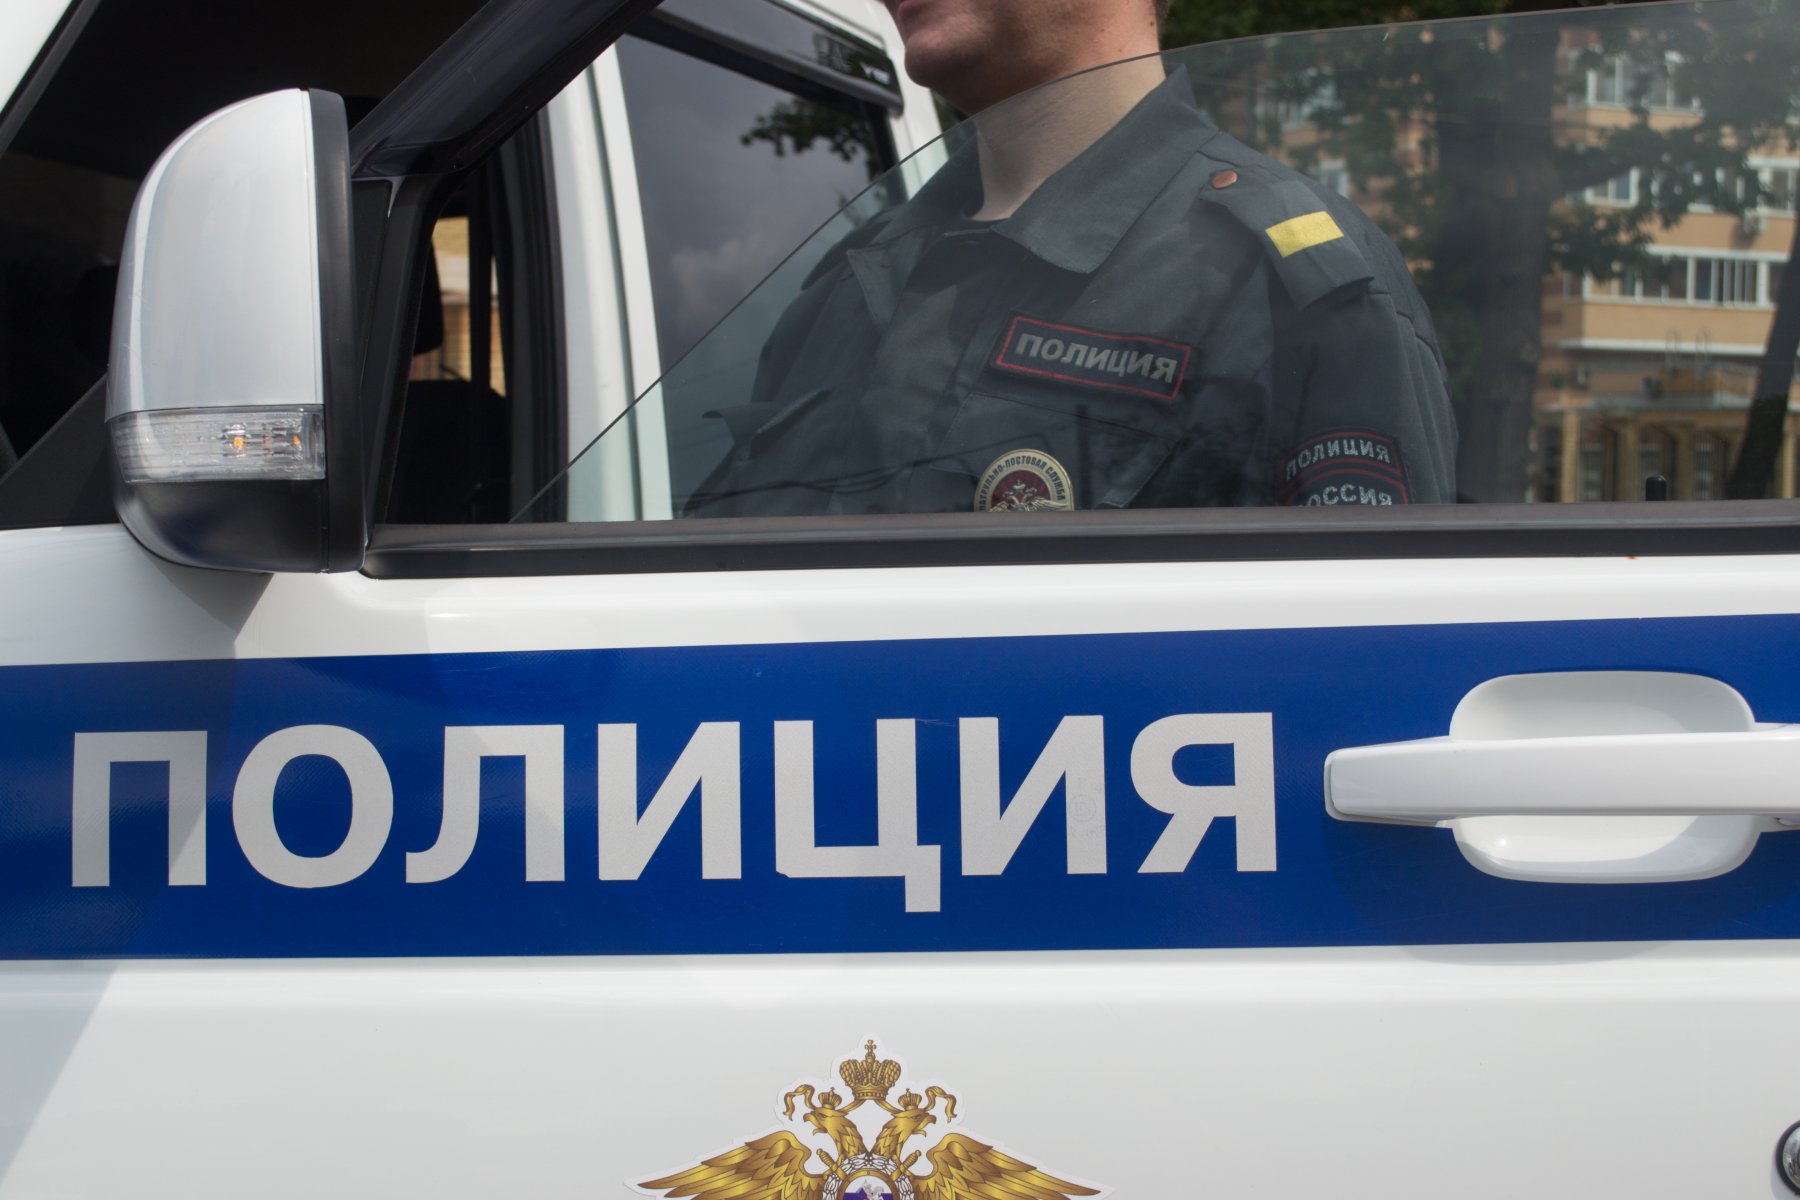 Москвича приговорили к 3 годам тюрьмы за смертельный наезд на ребенка на парковке